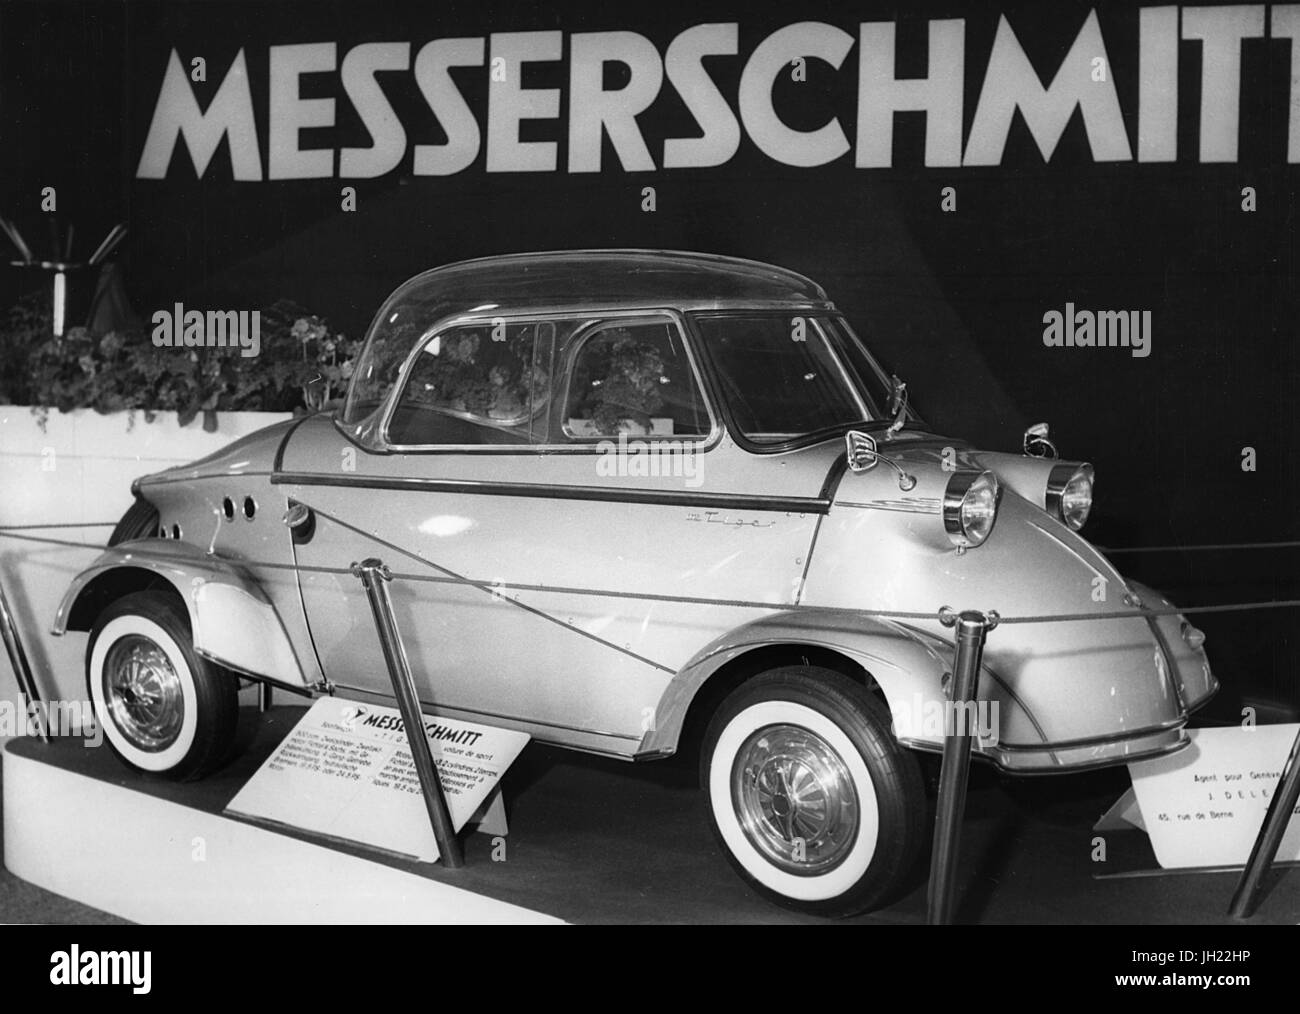 Messerschmitt,Ginevra mostra 1958 Foto Stock